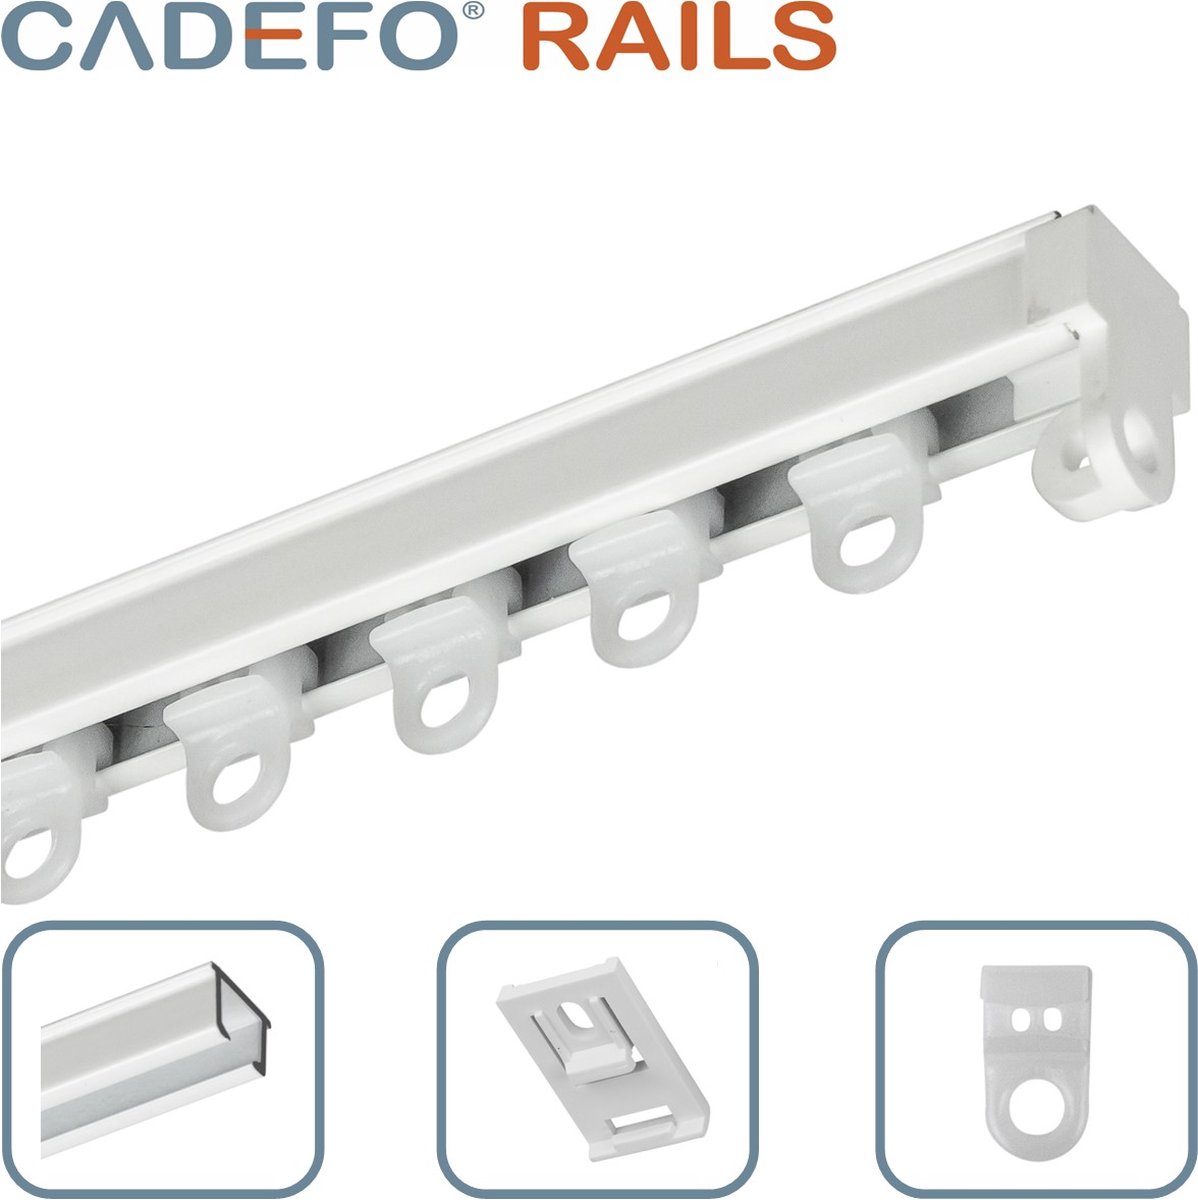 CADEFO RAILS (201 - 250 cm) Gordijnrails - Compleet op maat! - UIT 1 STUK - Leverbaar tot 6 meter - Plafondbevestiging - Lengte 201 cm